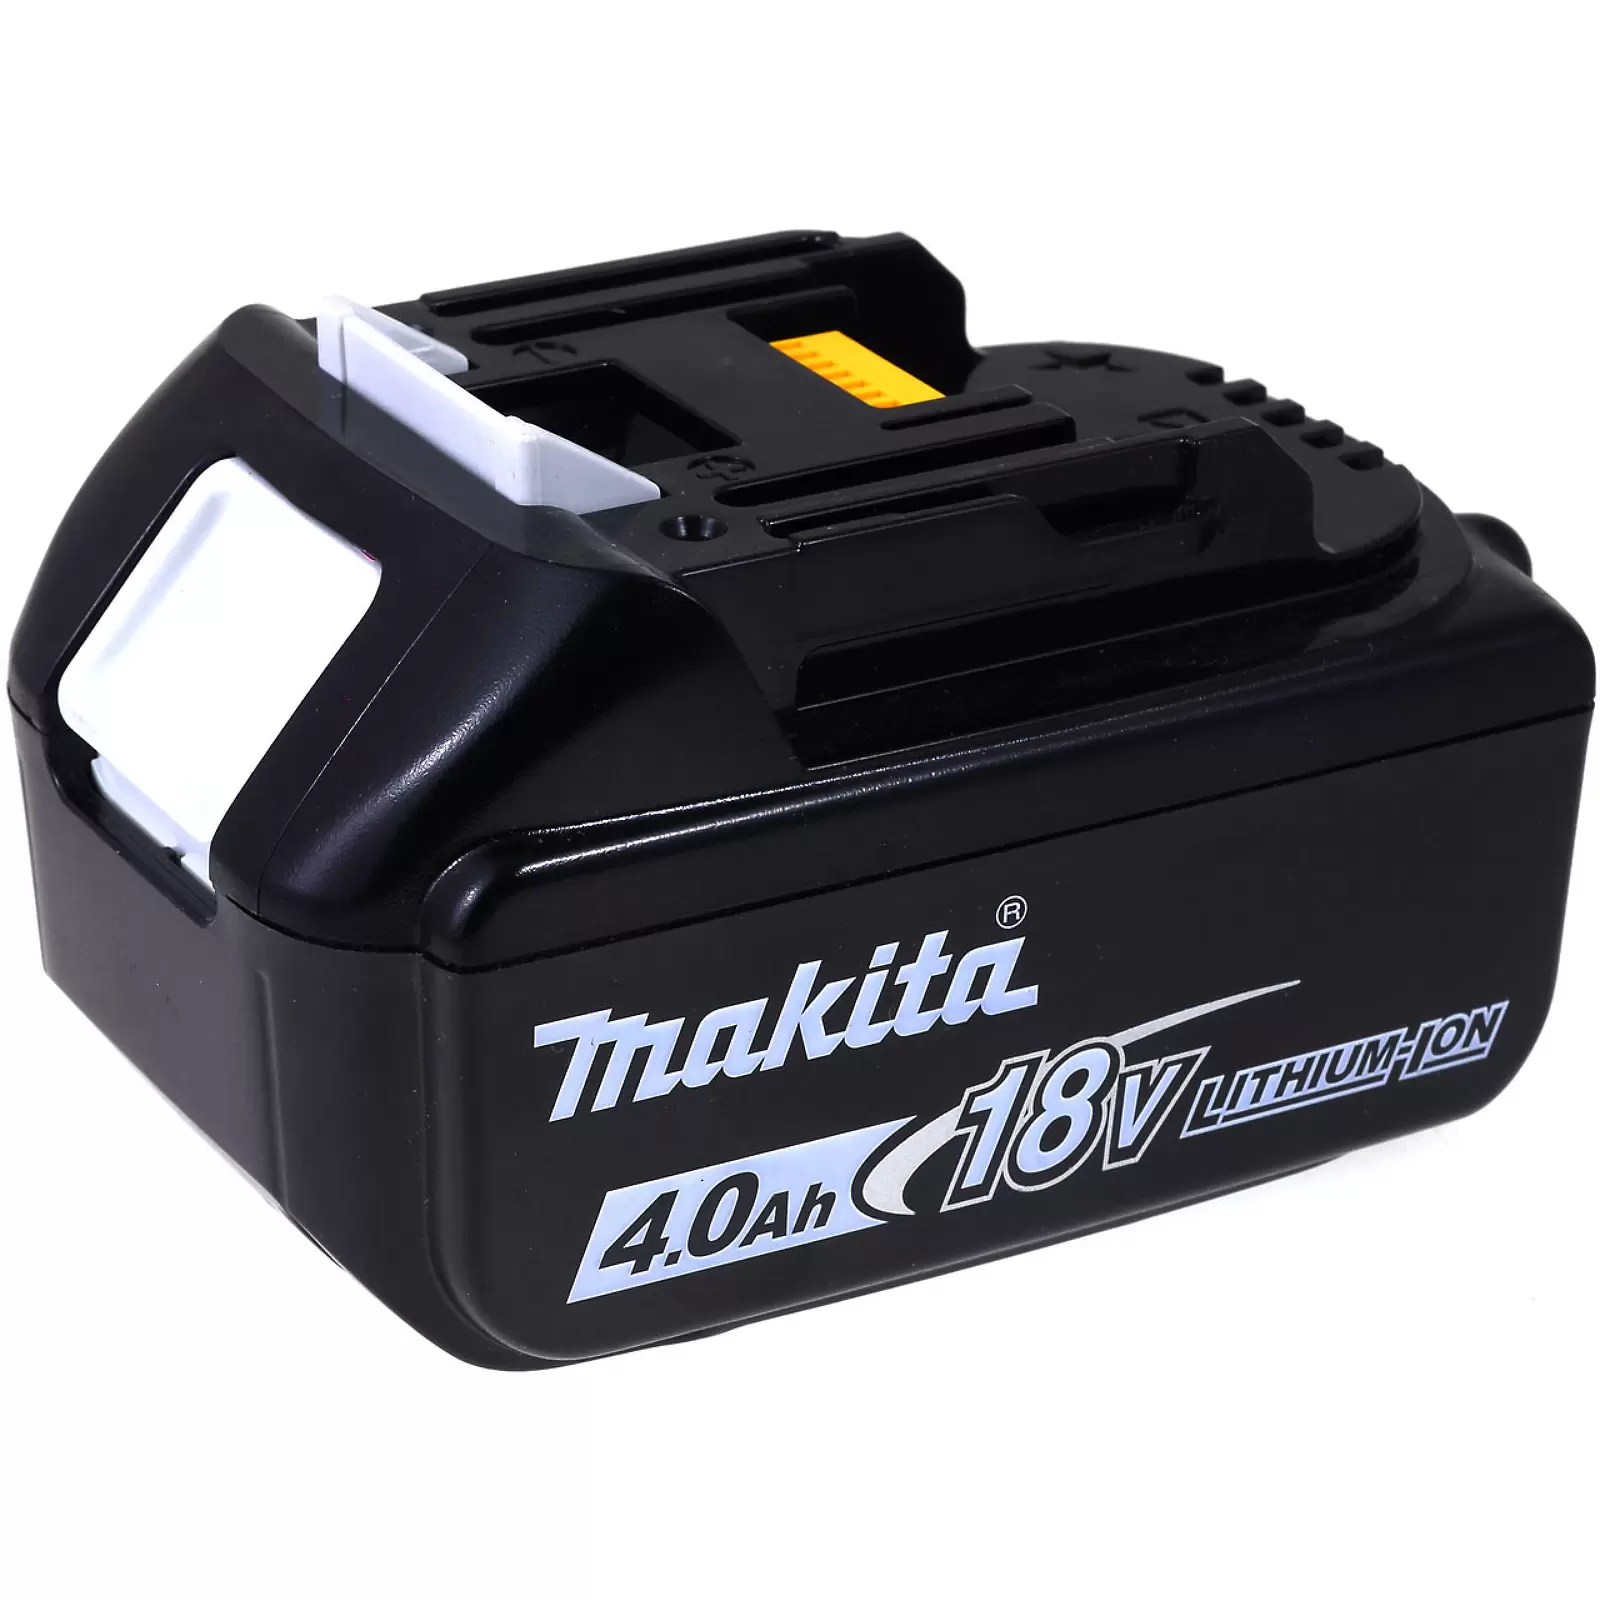 Akku für Werkzeug Makita Blockakku Typ BL1840/BL1840B 4000mAh Original